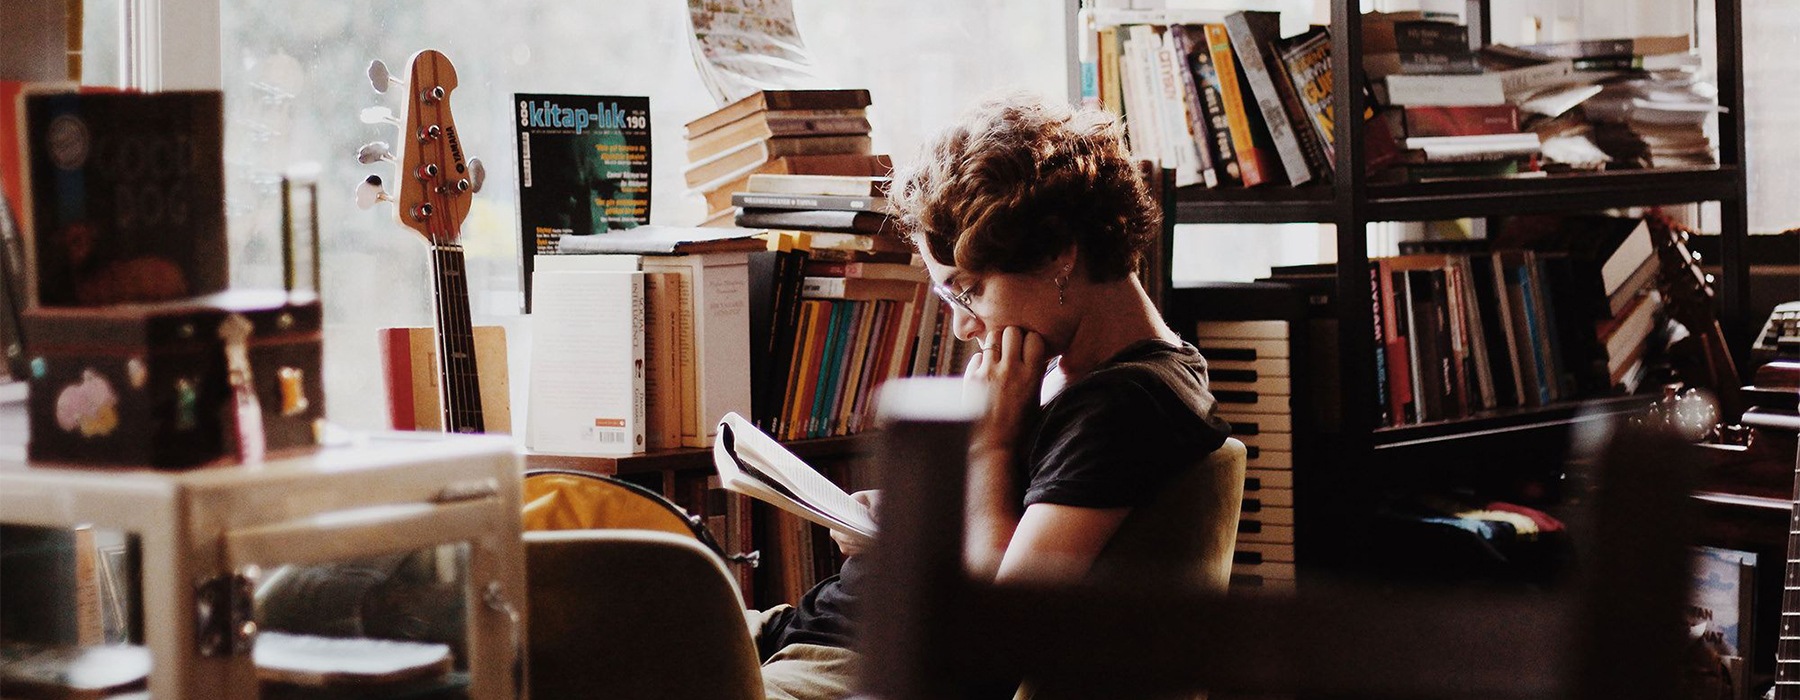 girl reading near bookshelf